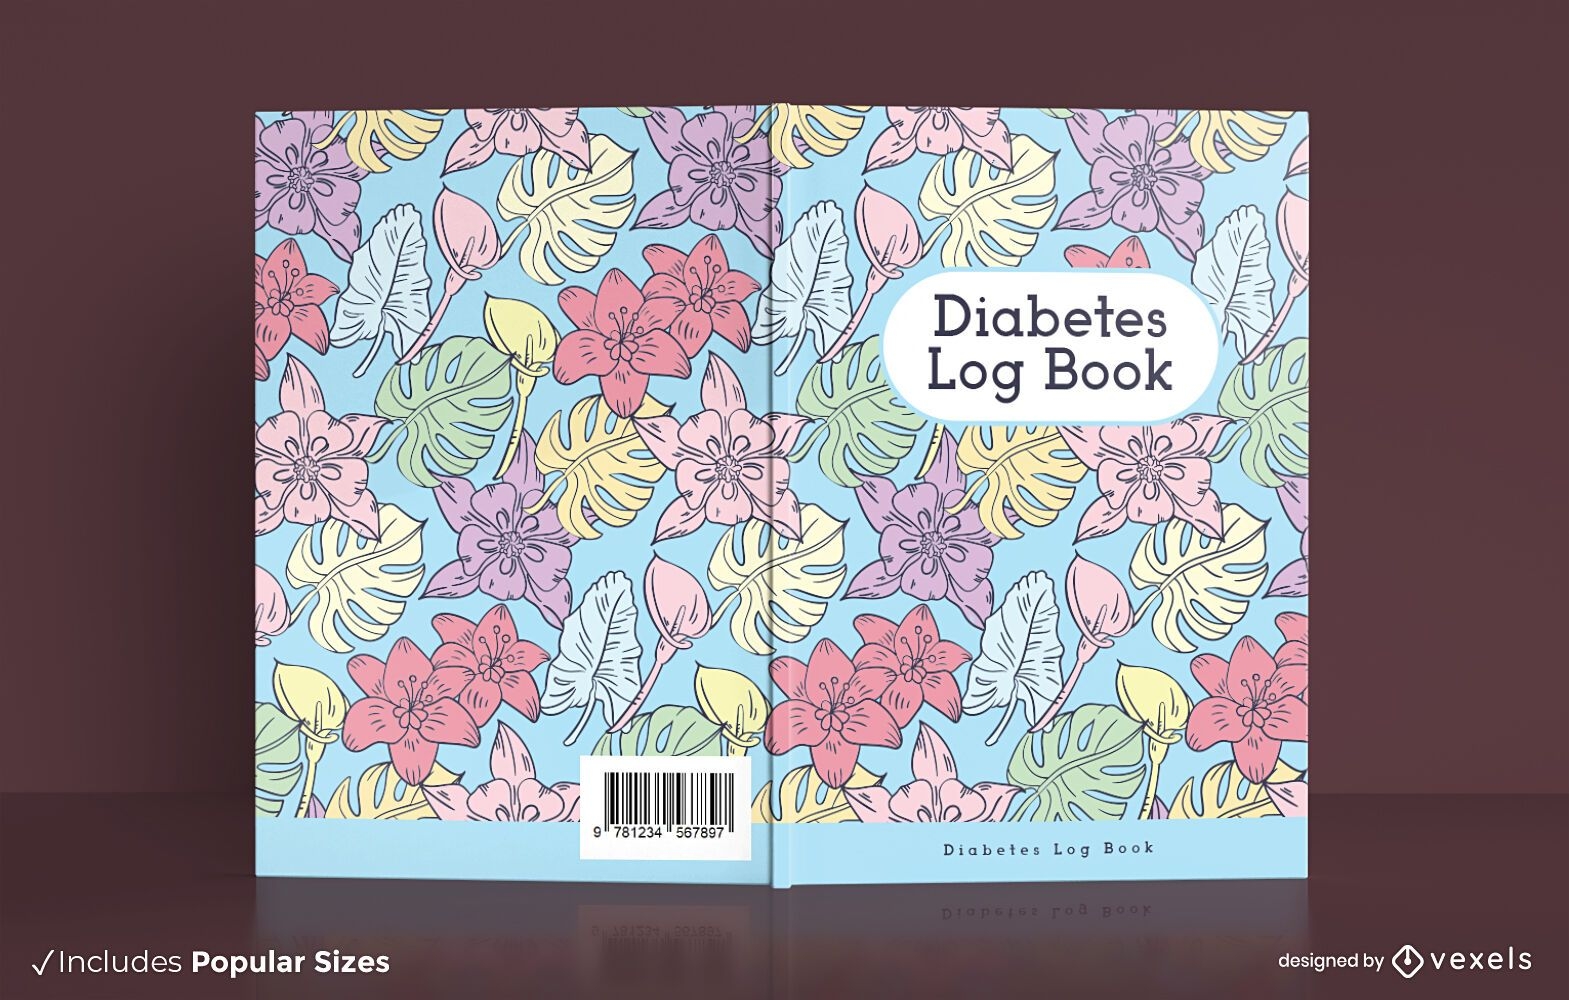 Design des Diabetes-Logbuch-Covers